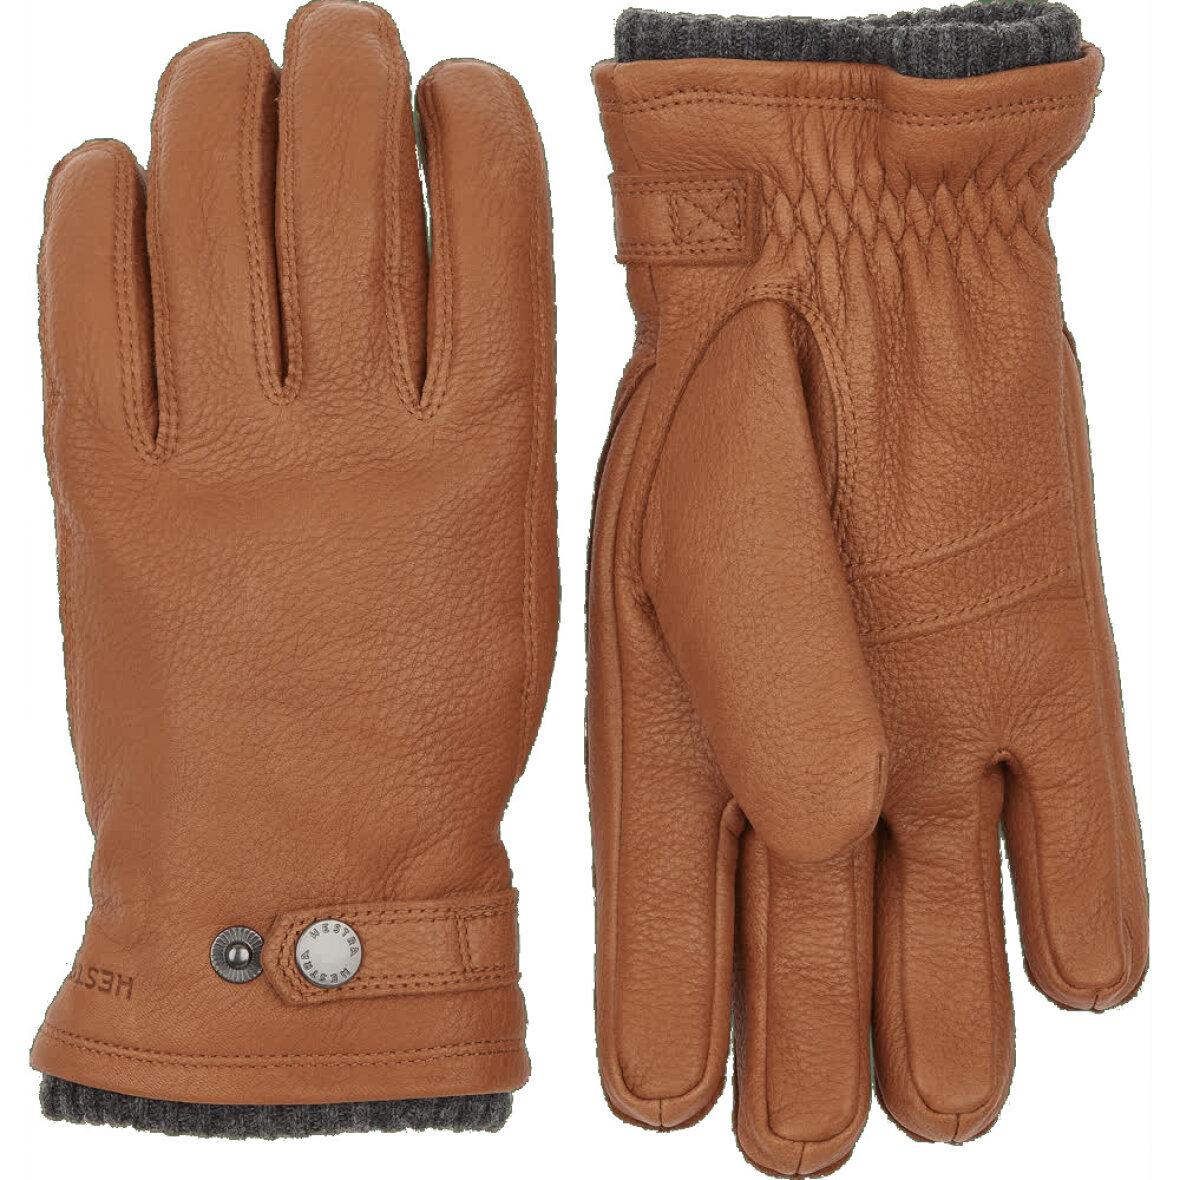 20830 Handsker - Find kvalitets fra Hestra